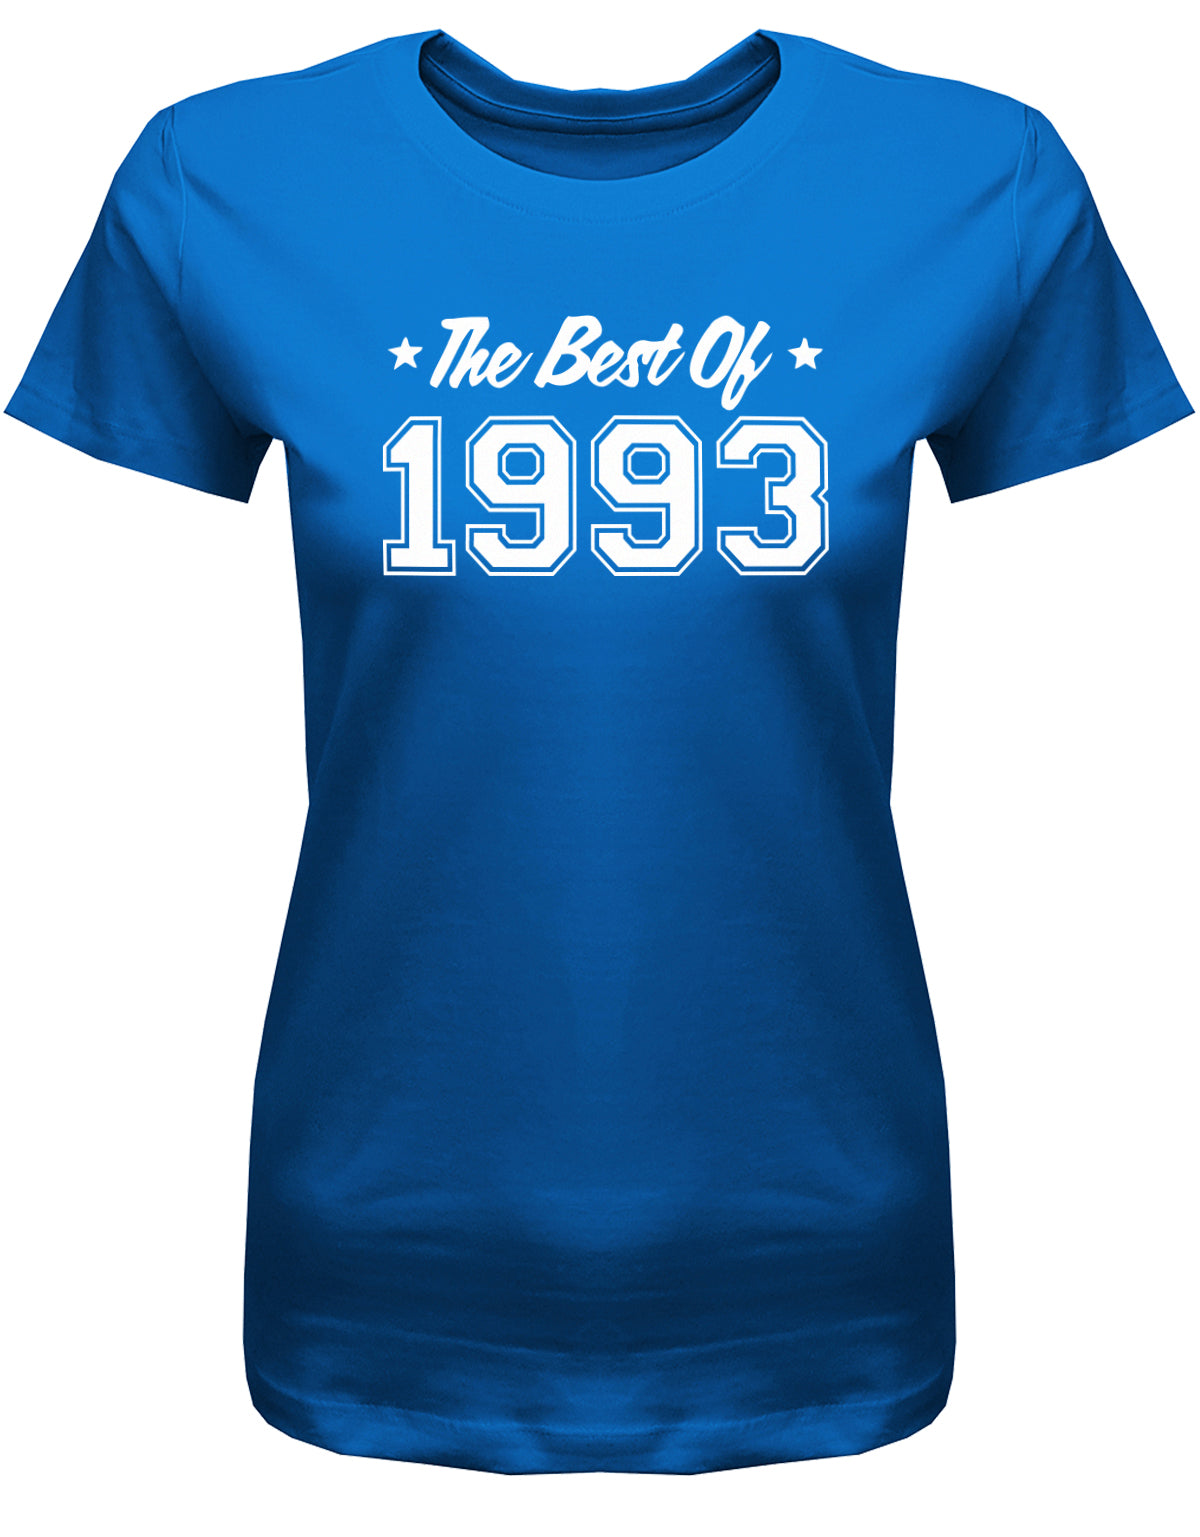 Lustiges T-Shirt zum 30. Geburtstag für die Frau Bedruckt mit: The best of 1993 ✓ Geschenk zum 30 geburtstag Frau ✓ 1993 geburtstag Frau ✓ 30 Geburtstag tshirt ✓ shirt geburtstag 30 Royalblau